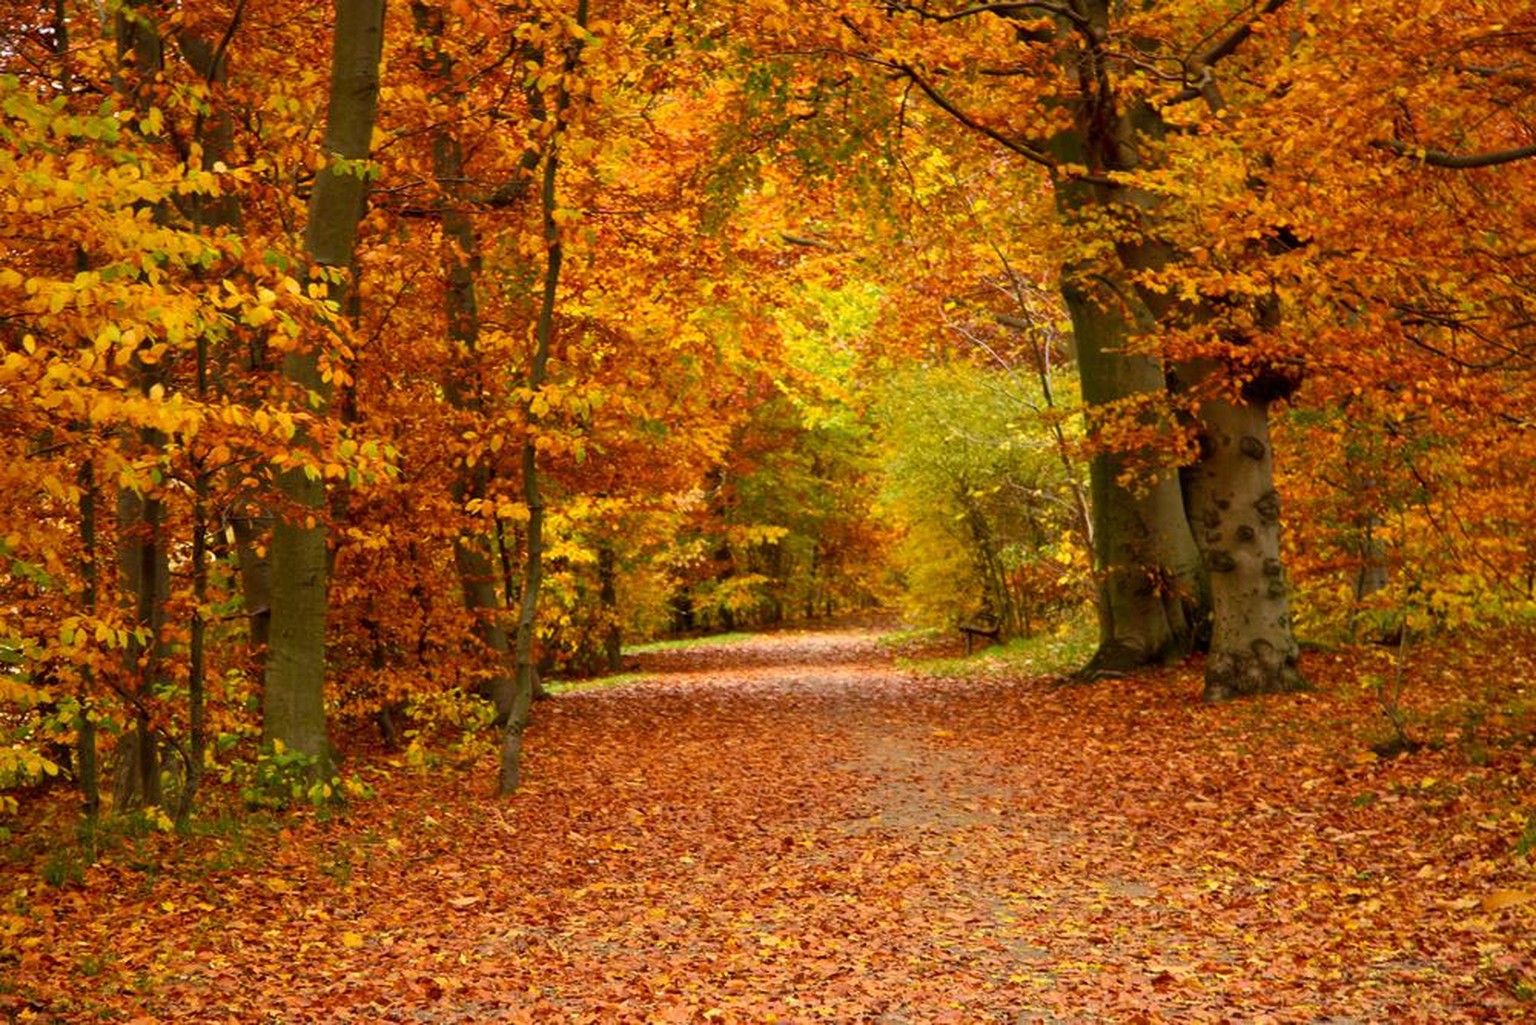 Herbst, Bäume mit gelb-rot verfärbten Blättern, Herbstlaub (Symbolbild)